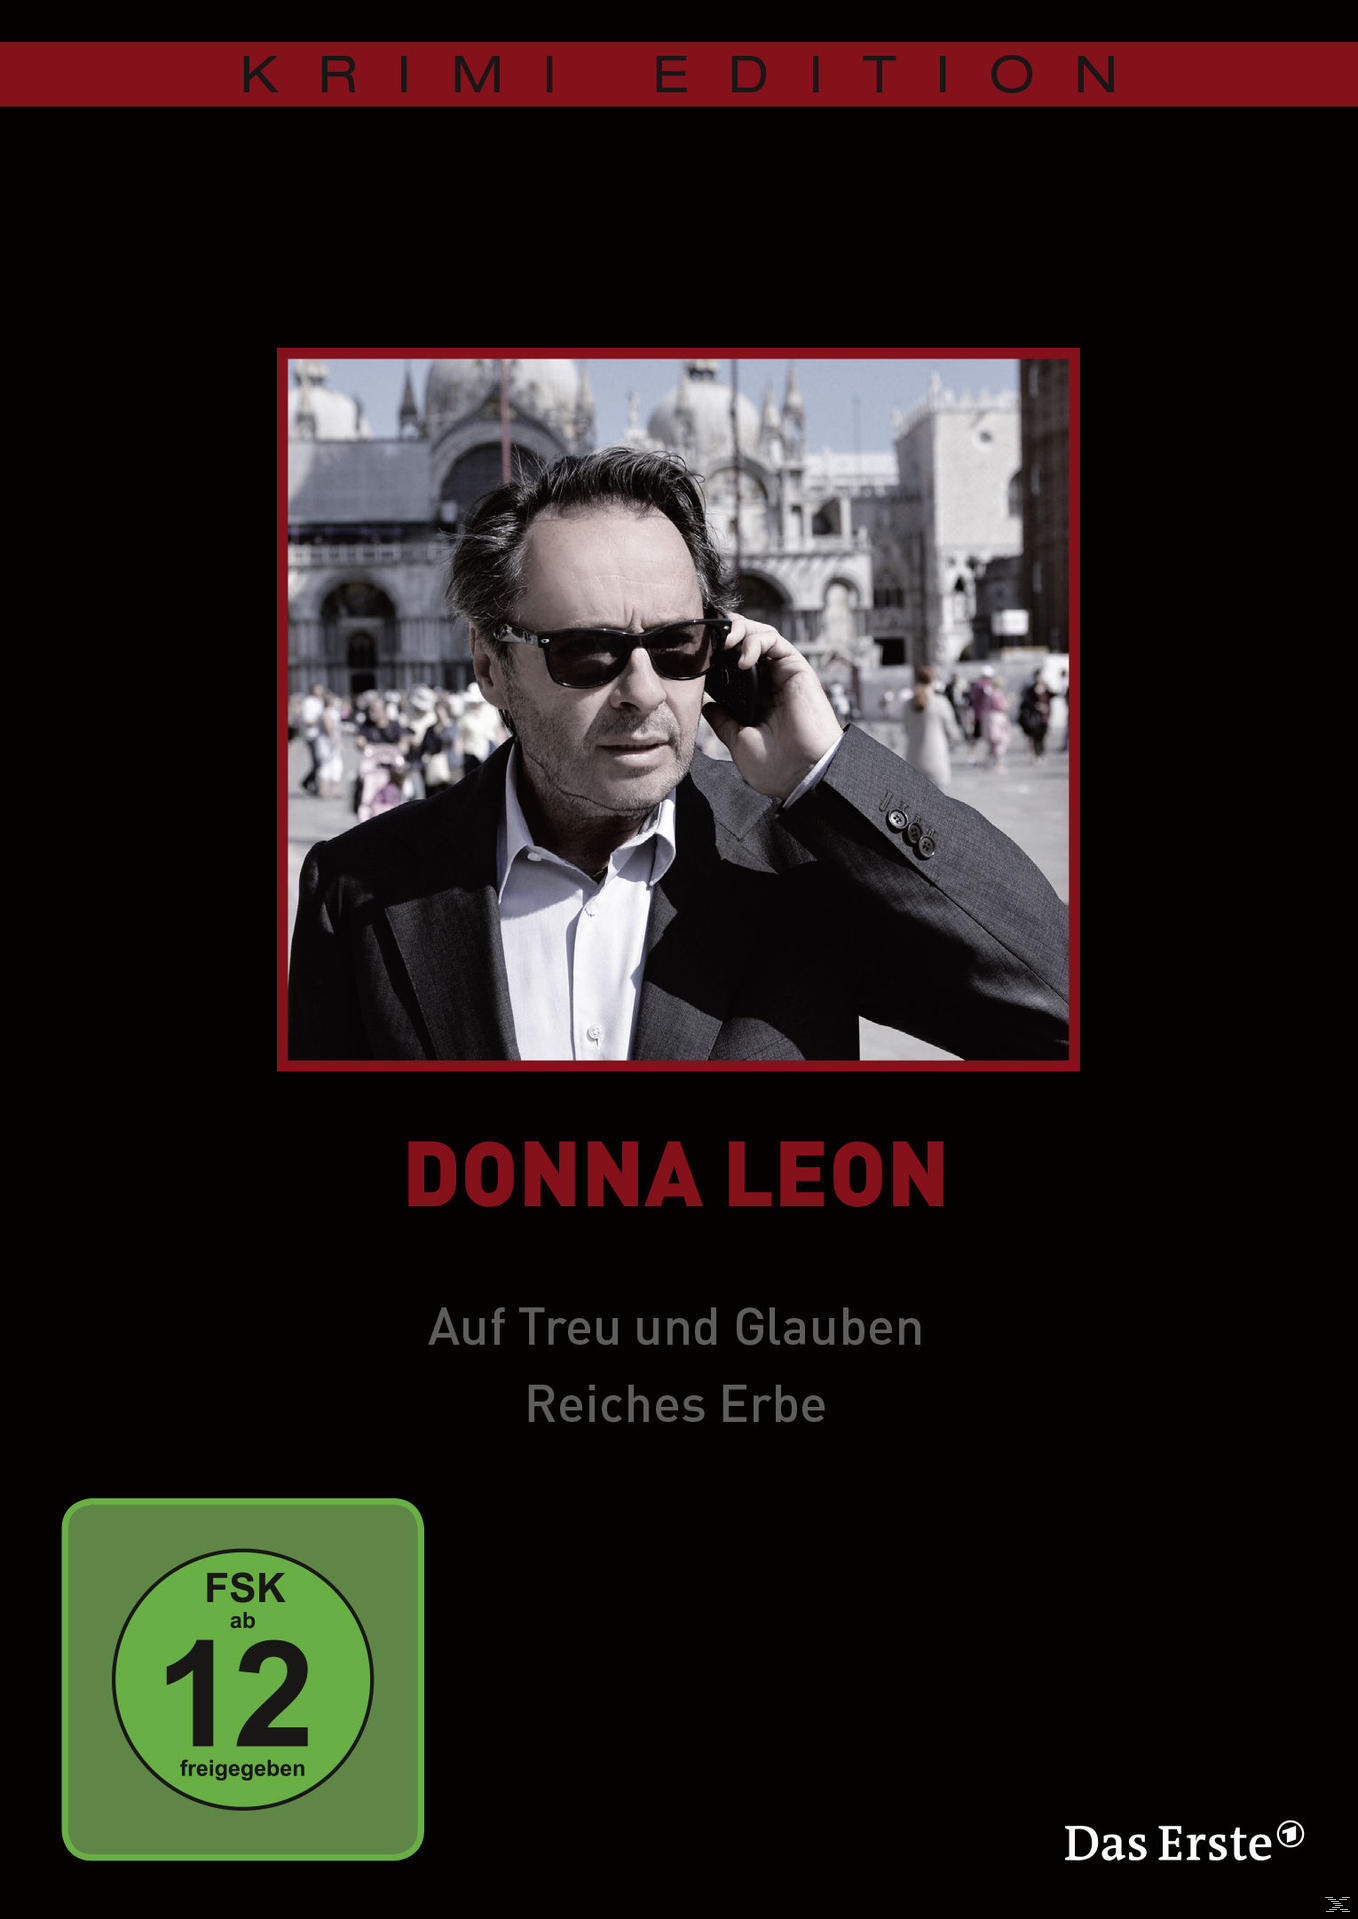 Donna Leon: Reiches Erbe DVD / Glauben Auf und Treu